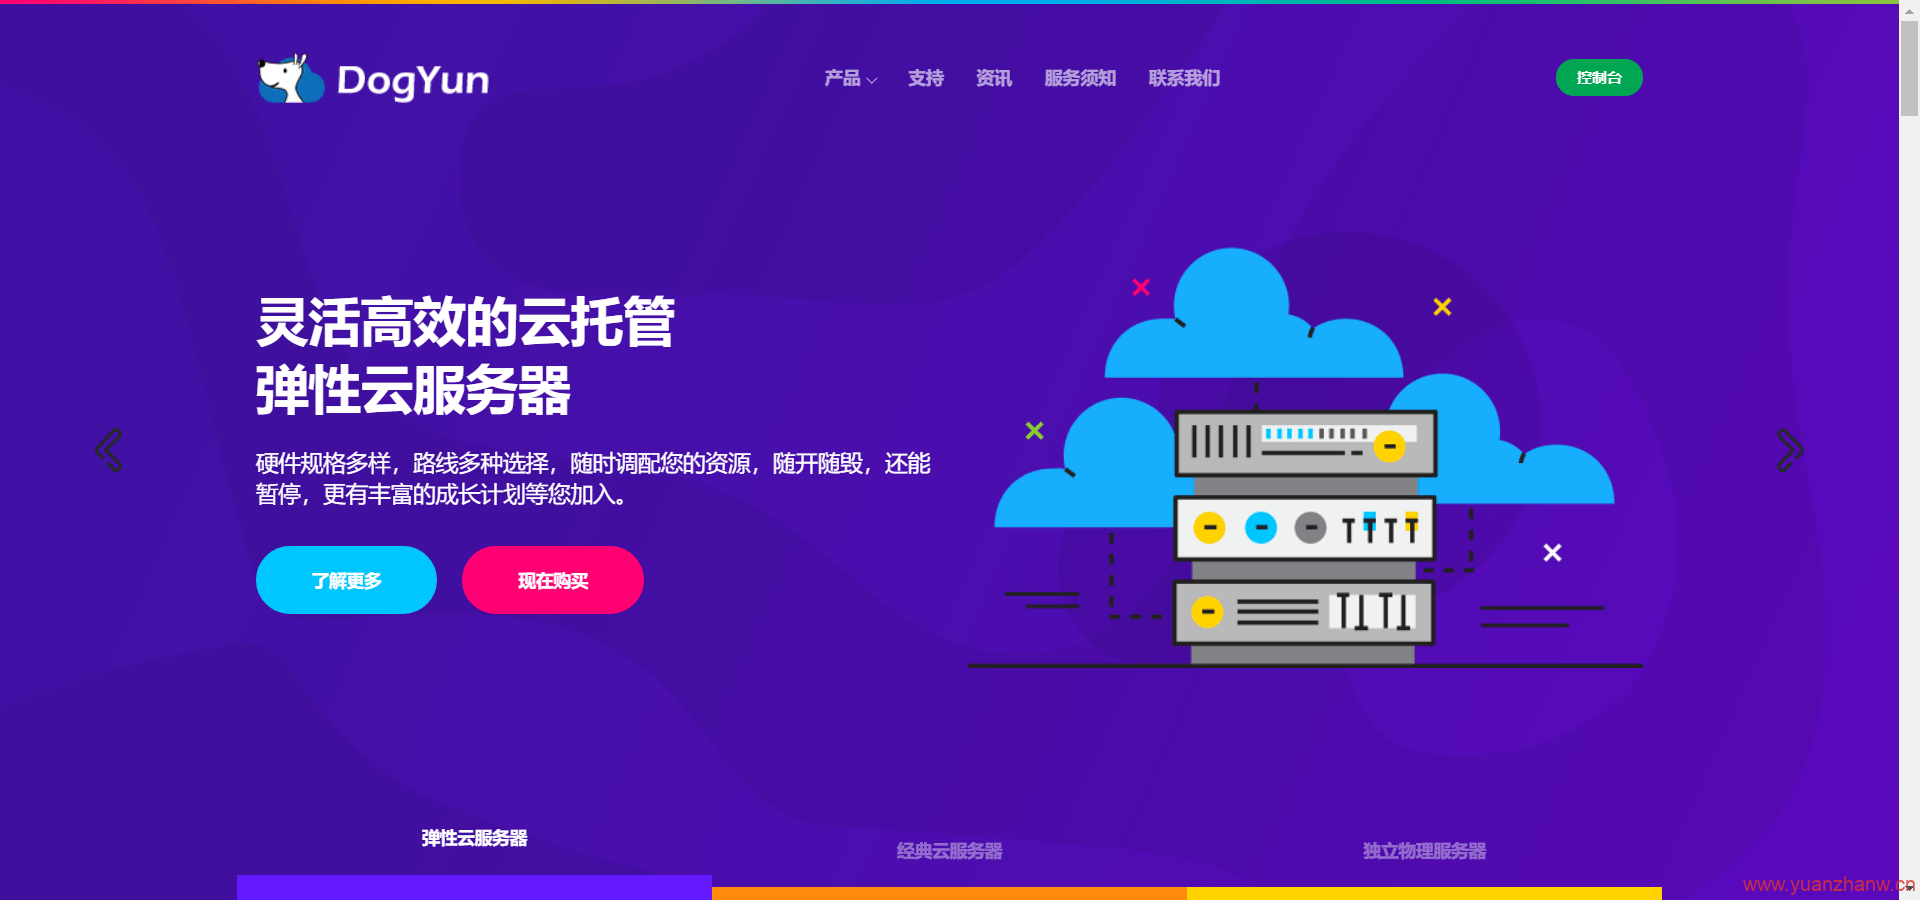 %DOGYUN-香港BGP 1核1G 硬盘10GB 流量300G 带宽50M 月付18元 年付180元-猿站网-插图